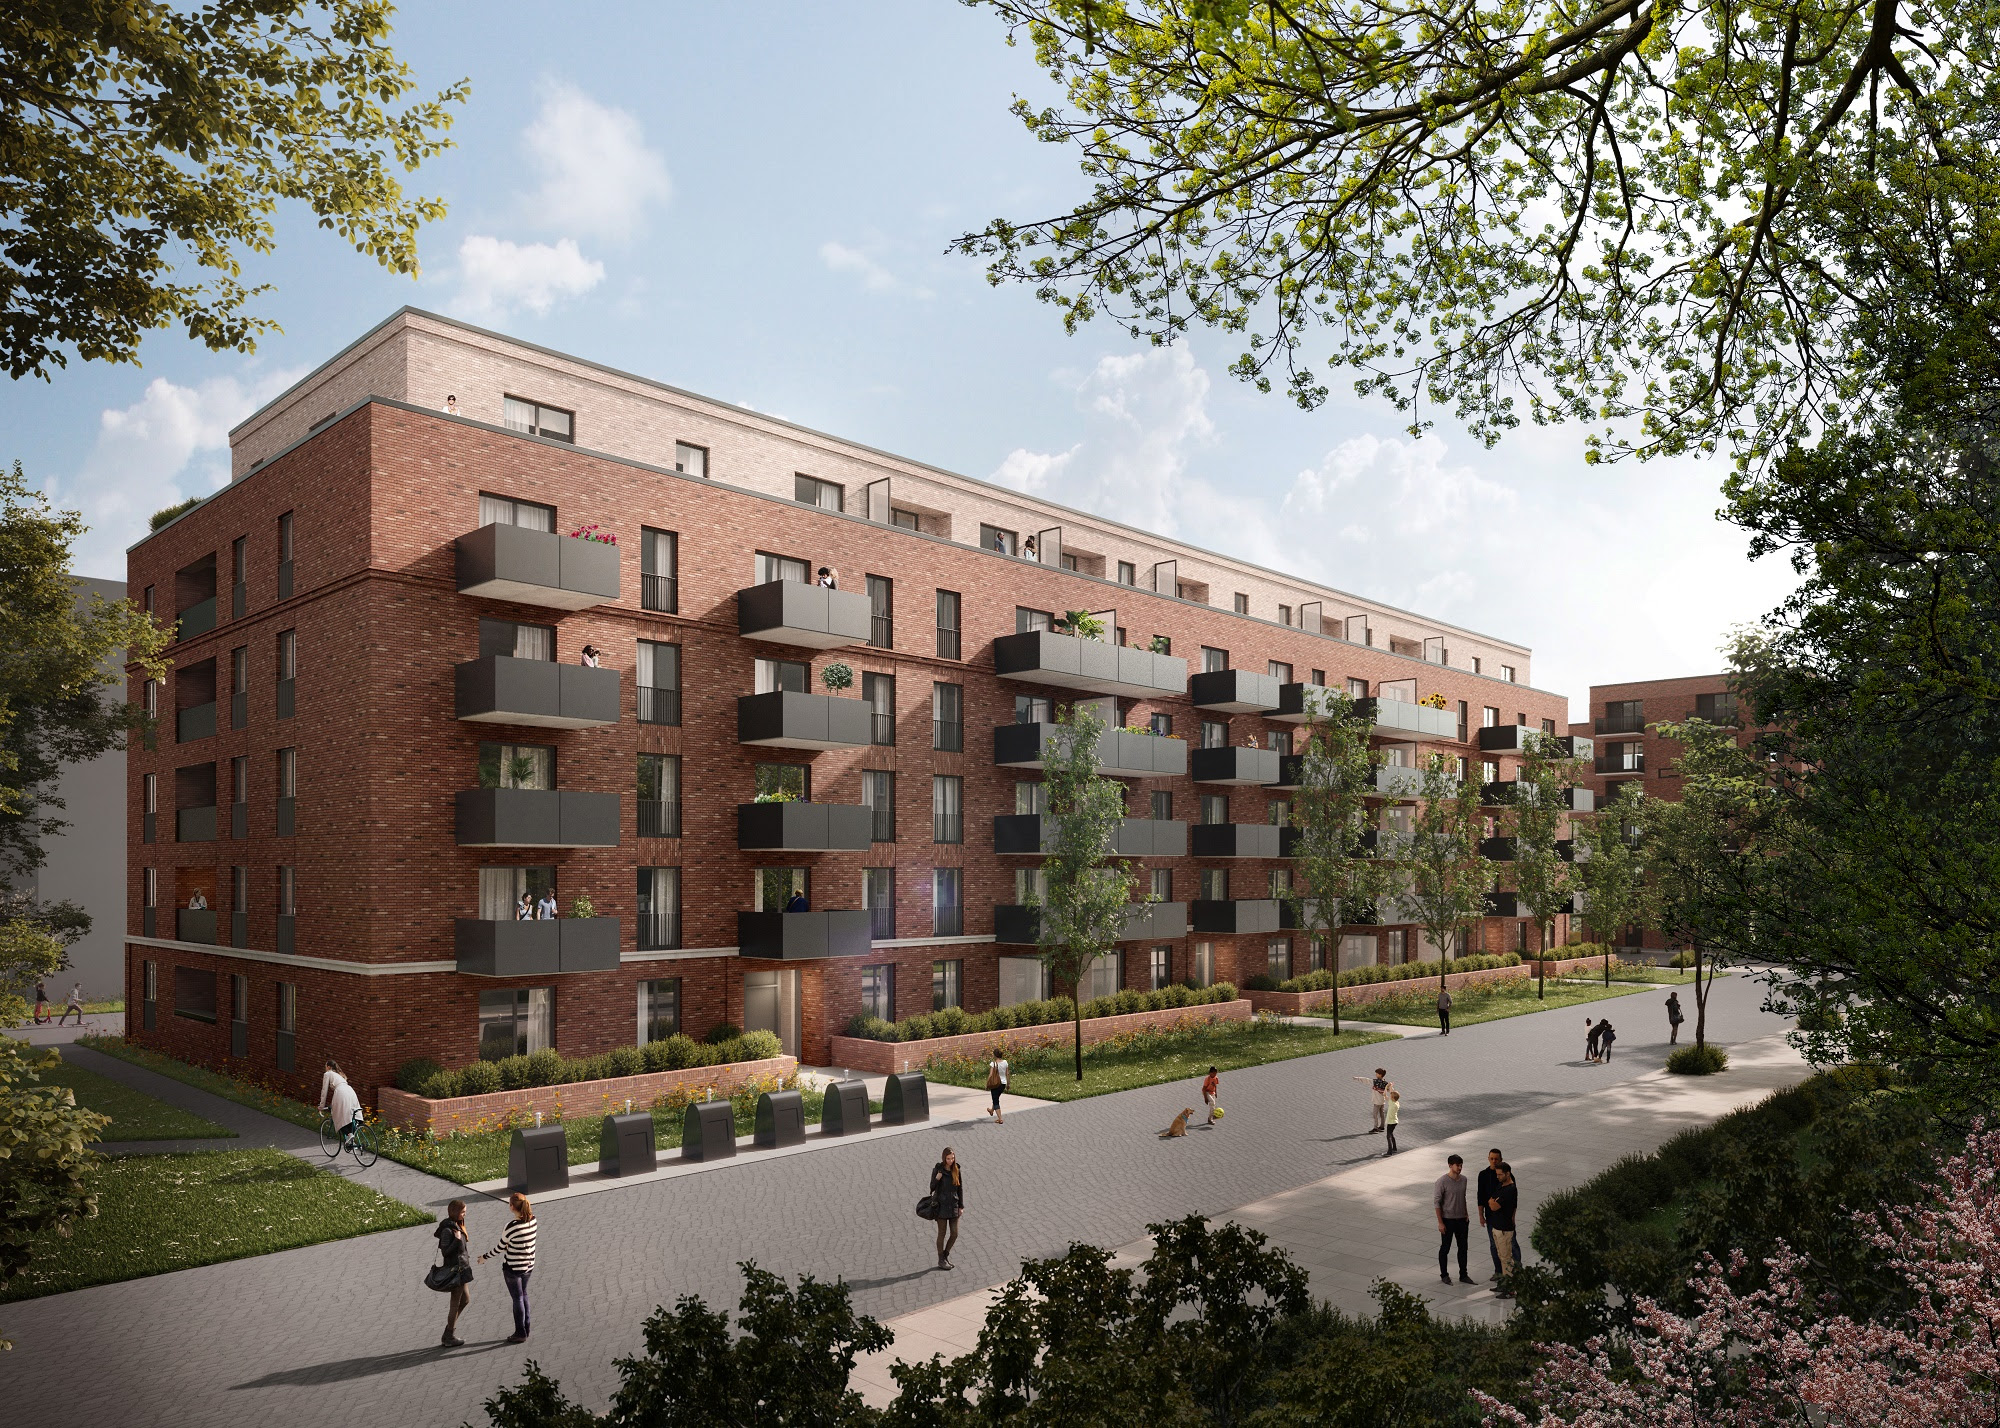 Quartier Turley, Mannheim : Construction d’un nouveau quartier résidentiel durable (image : © bloomimages GmbH, Hambourg).